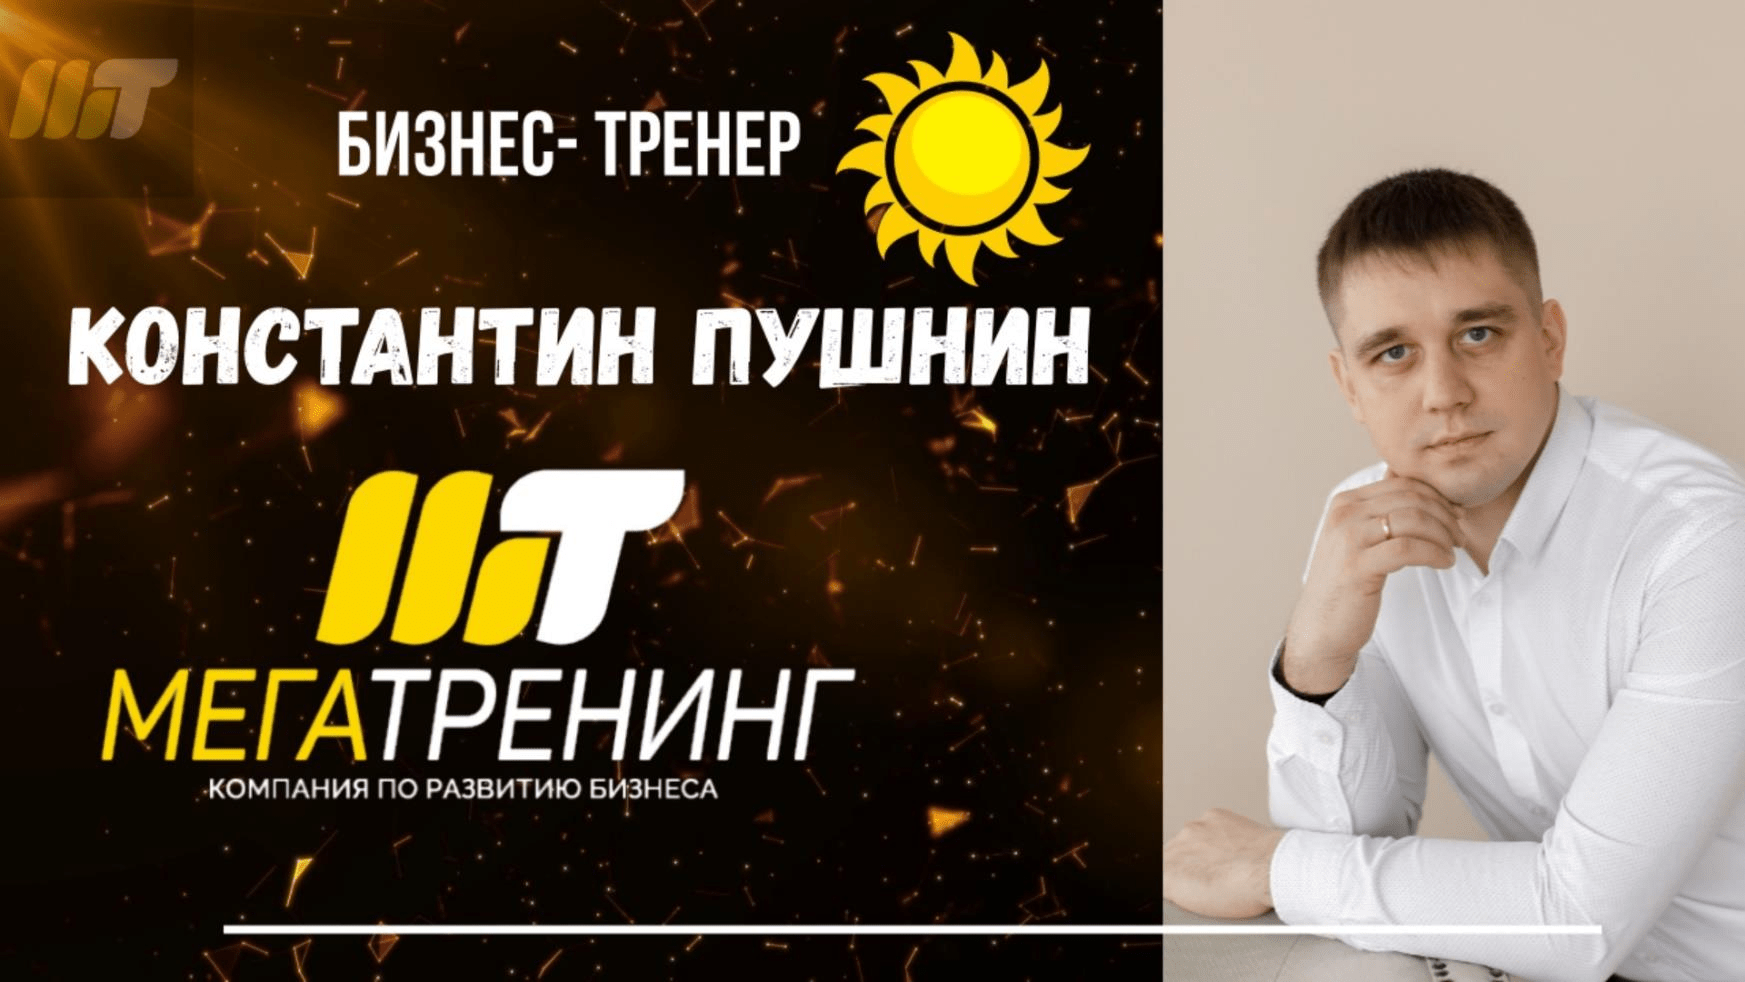 Бизнес-тренер Константин Пушнин